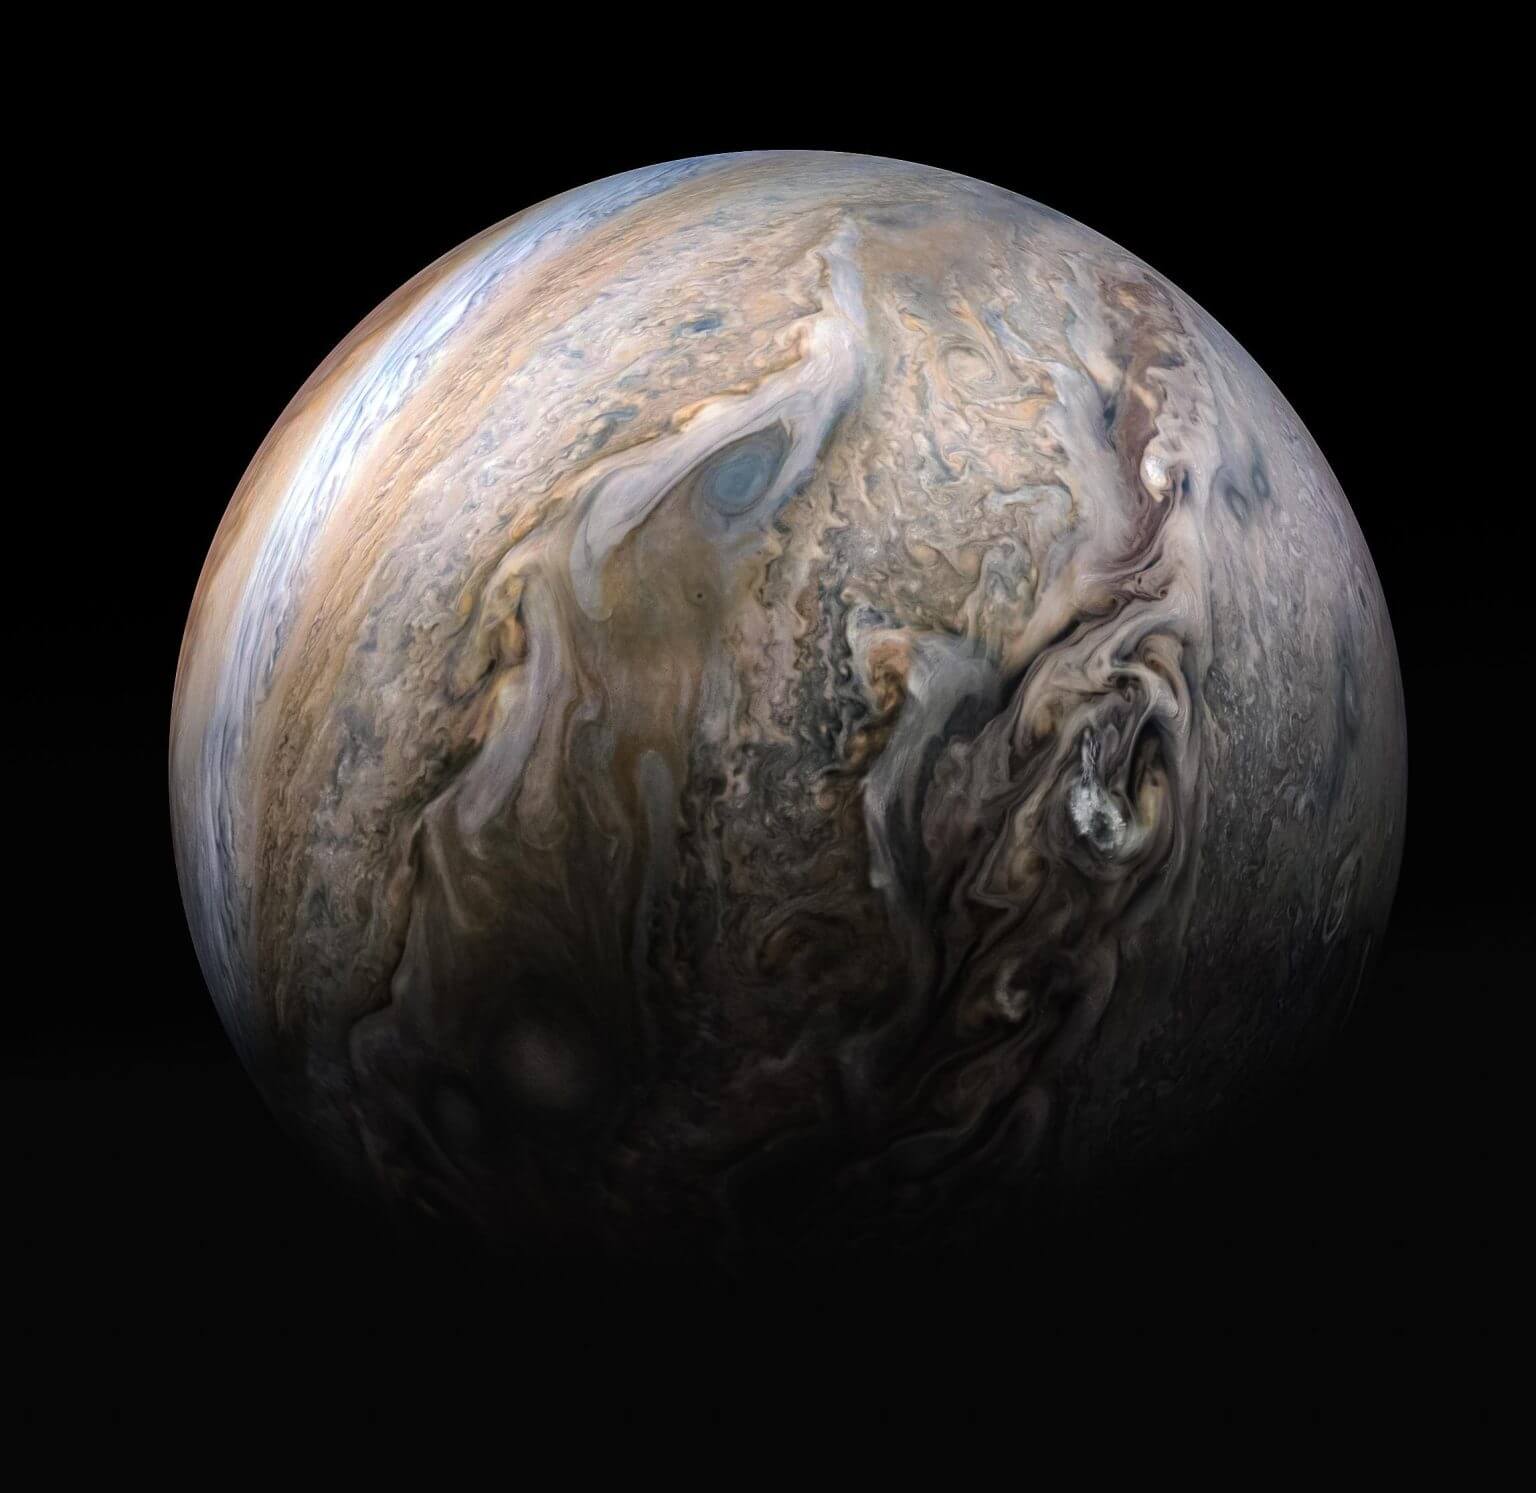 תמונה של צדק שצילמה ג'ונו ב-2019, ובה נראים אזורי סערות בחצי הכדור הצפוני. קרדיט: Enhanced image by Kevin M. Gill (CC-BY) based on images provided courtesy of NASA/JPL-Caltech/SwRI/MSSS